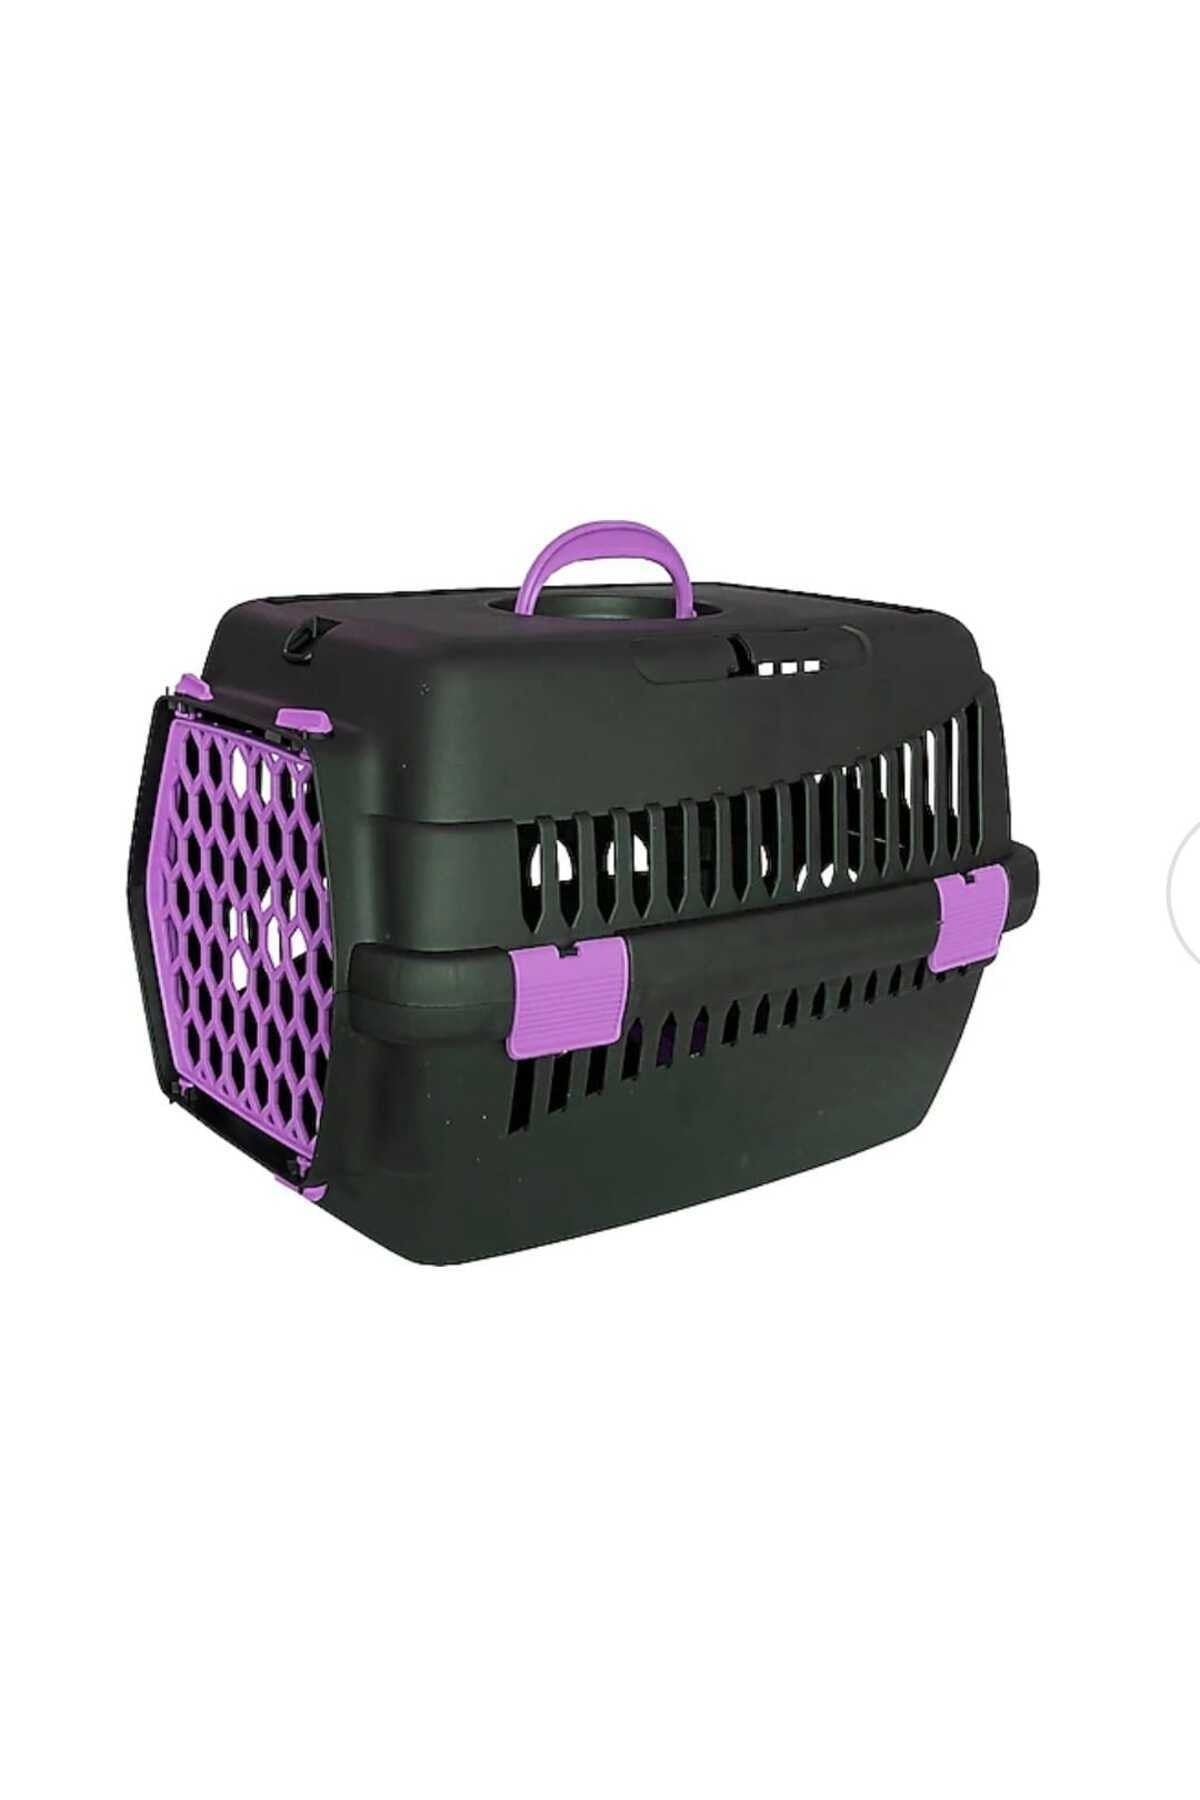 Erva Kedi,tavşan,köpek Taşıma Kutusu (BOX) 50*30*35 Cm Karışık Renkte Gönderilir,